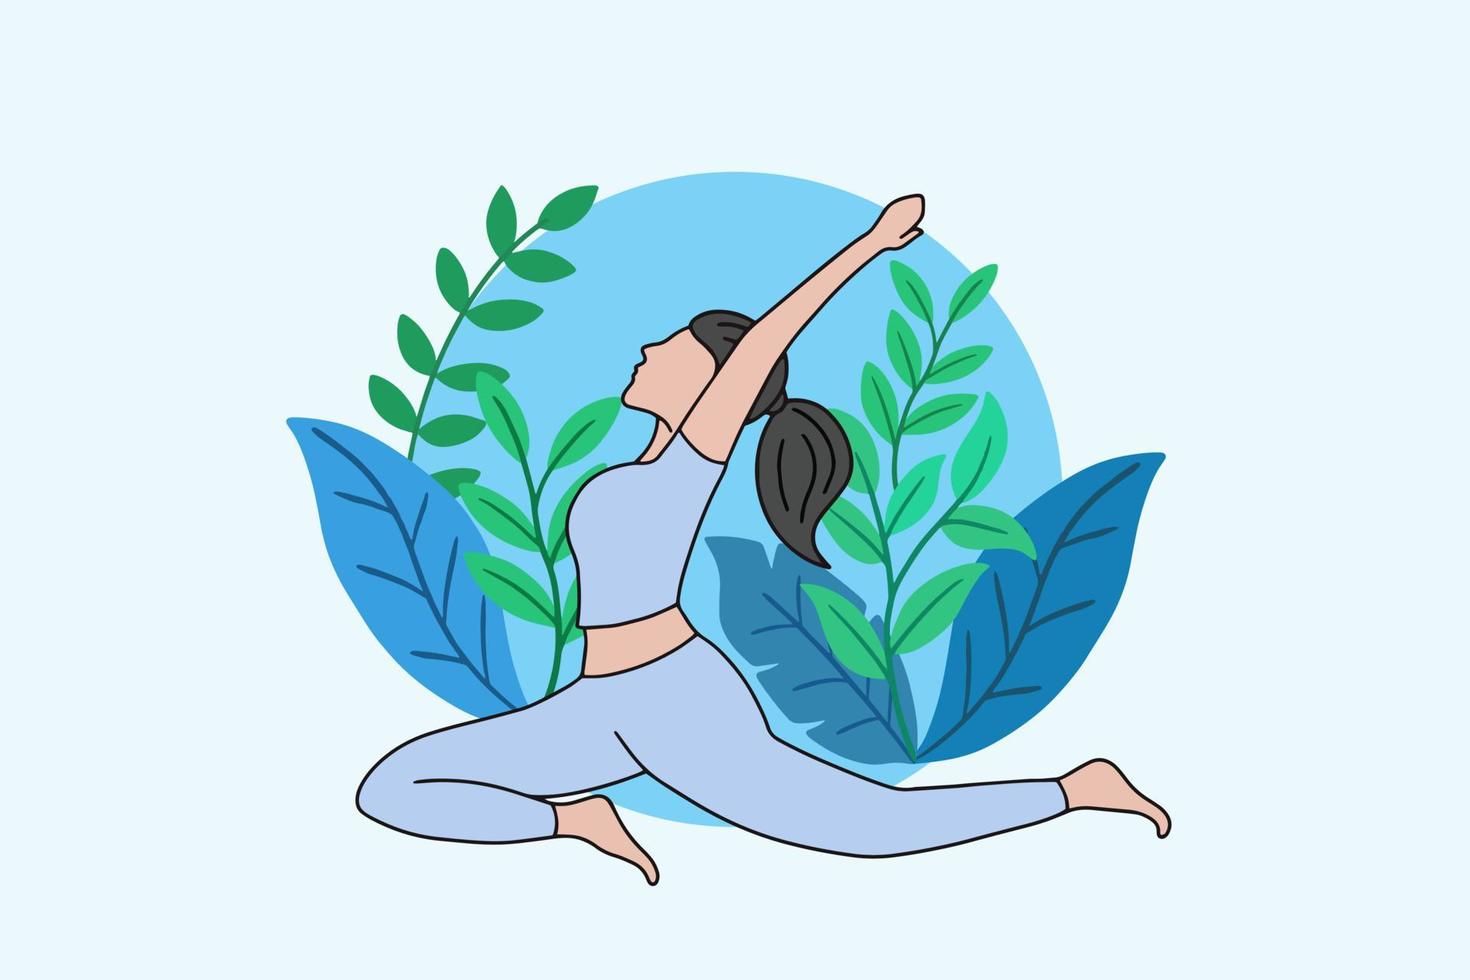 mulher meditando em ioga pacífica e meditação de estilo de vida saudável as pessoas posam design de desenho animado plano de relaxamento espiritual vetor